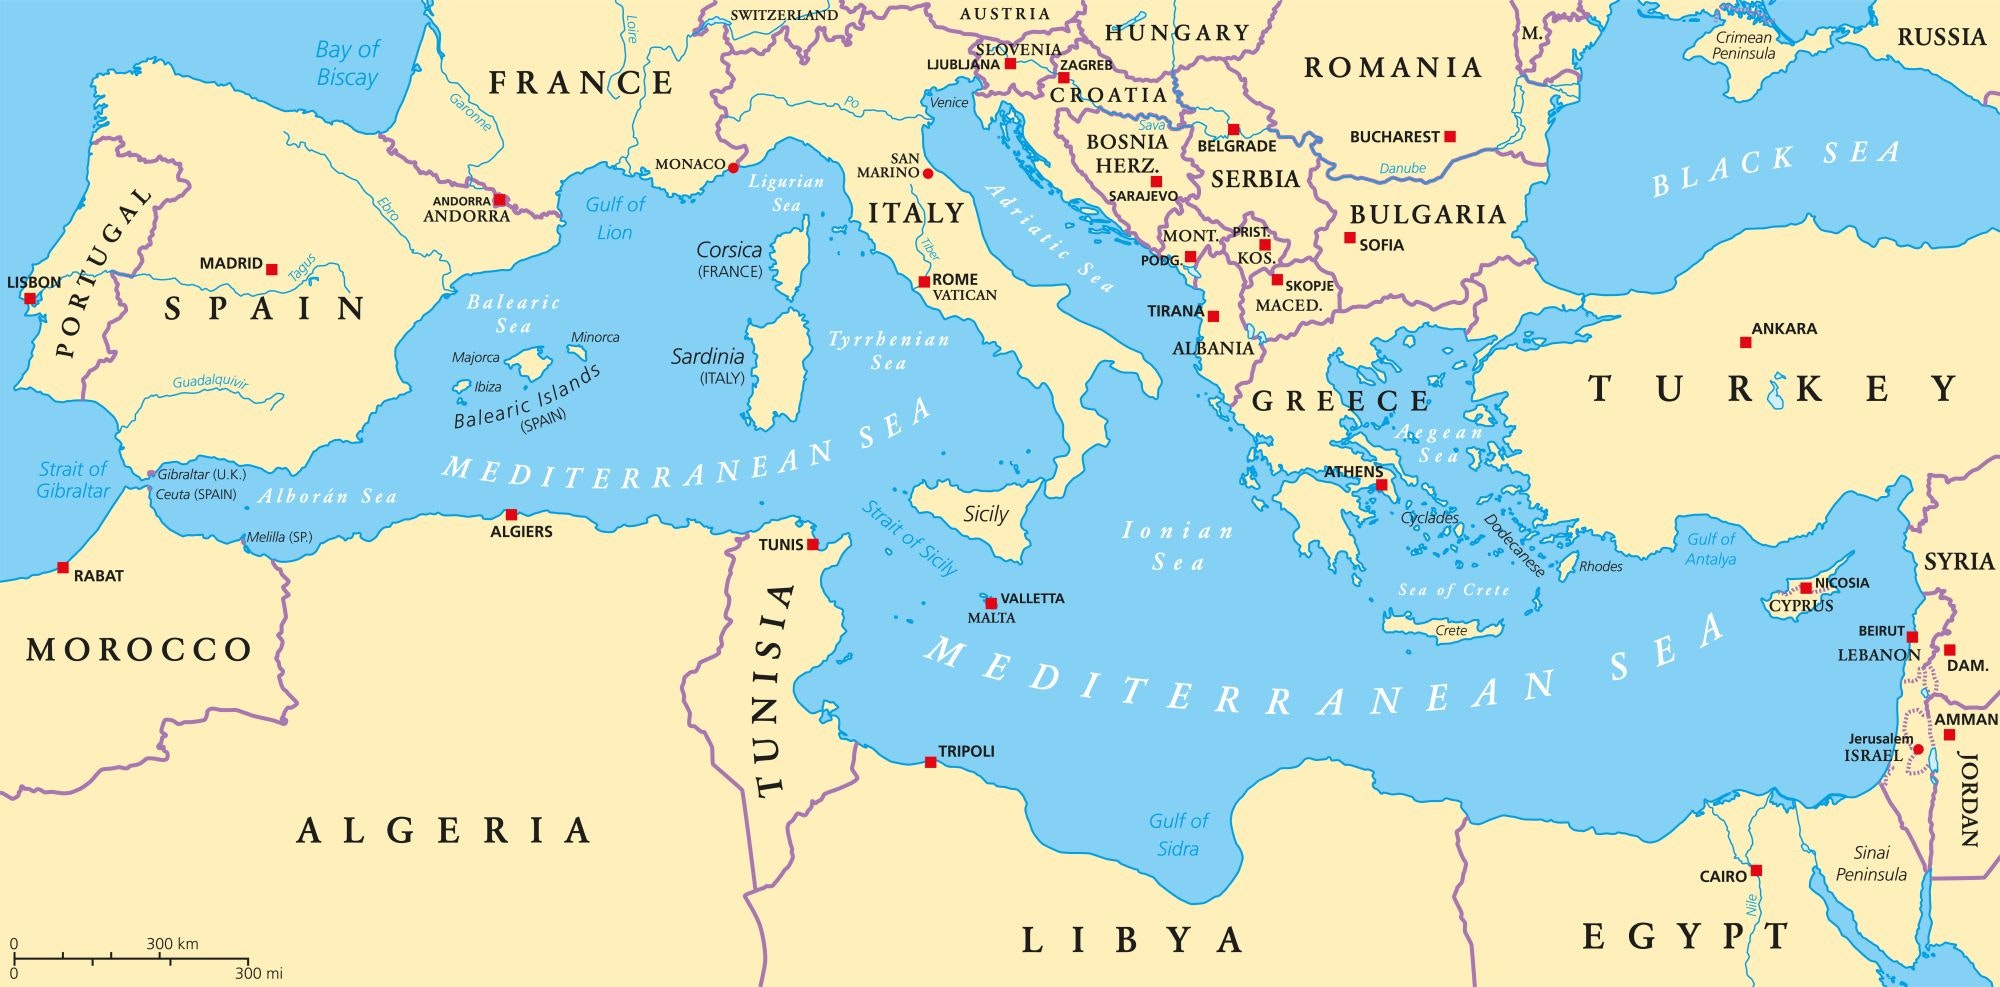 Mapa do Mar Mediterrâneo e terras circundantes